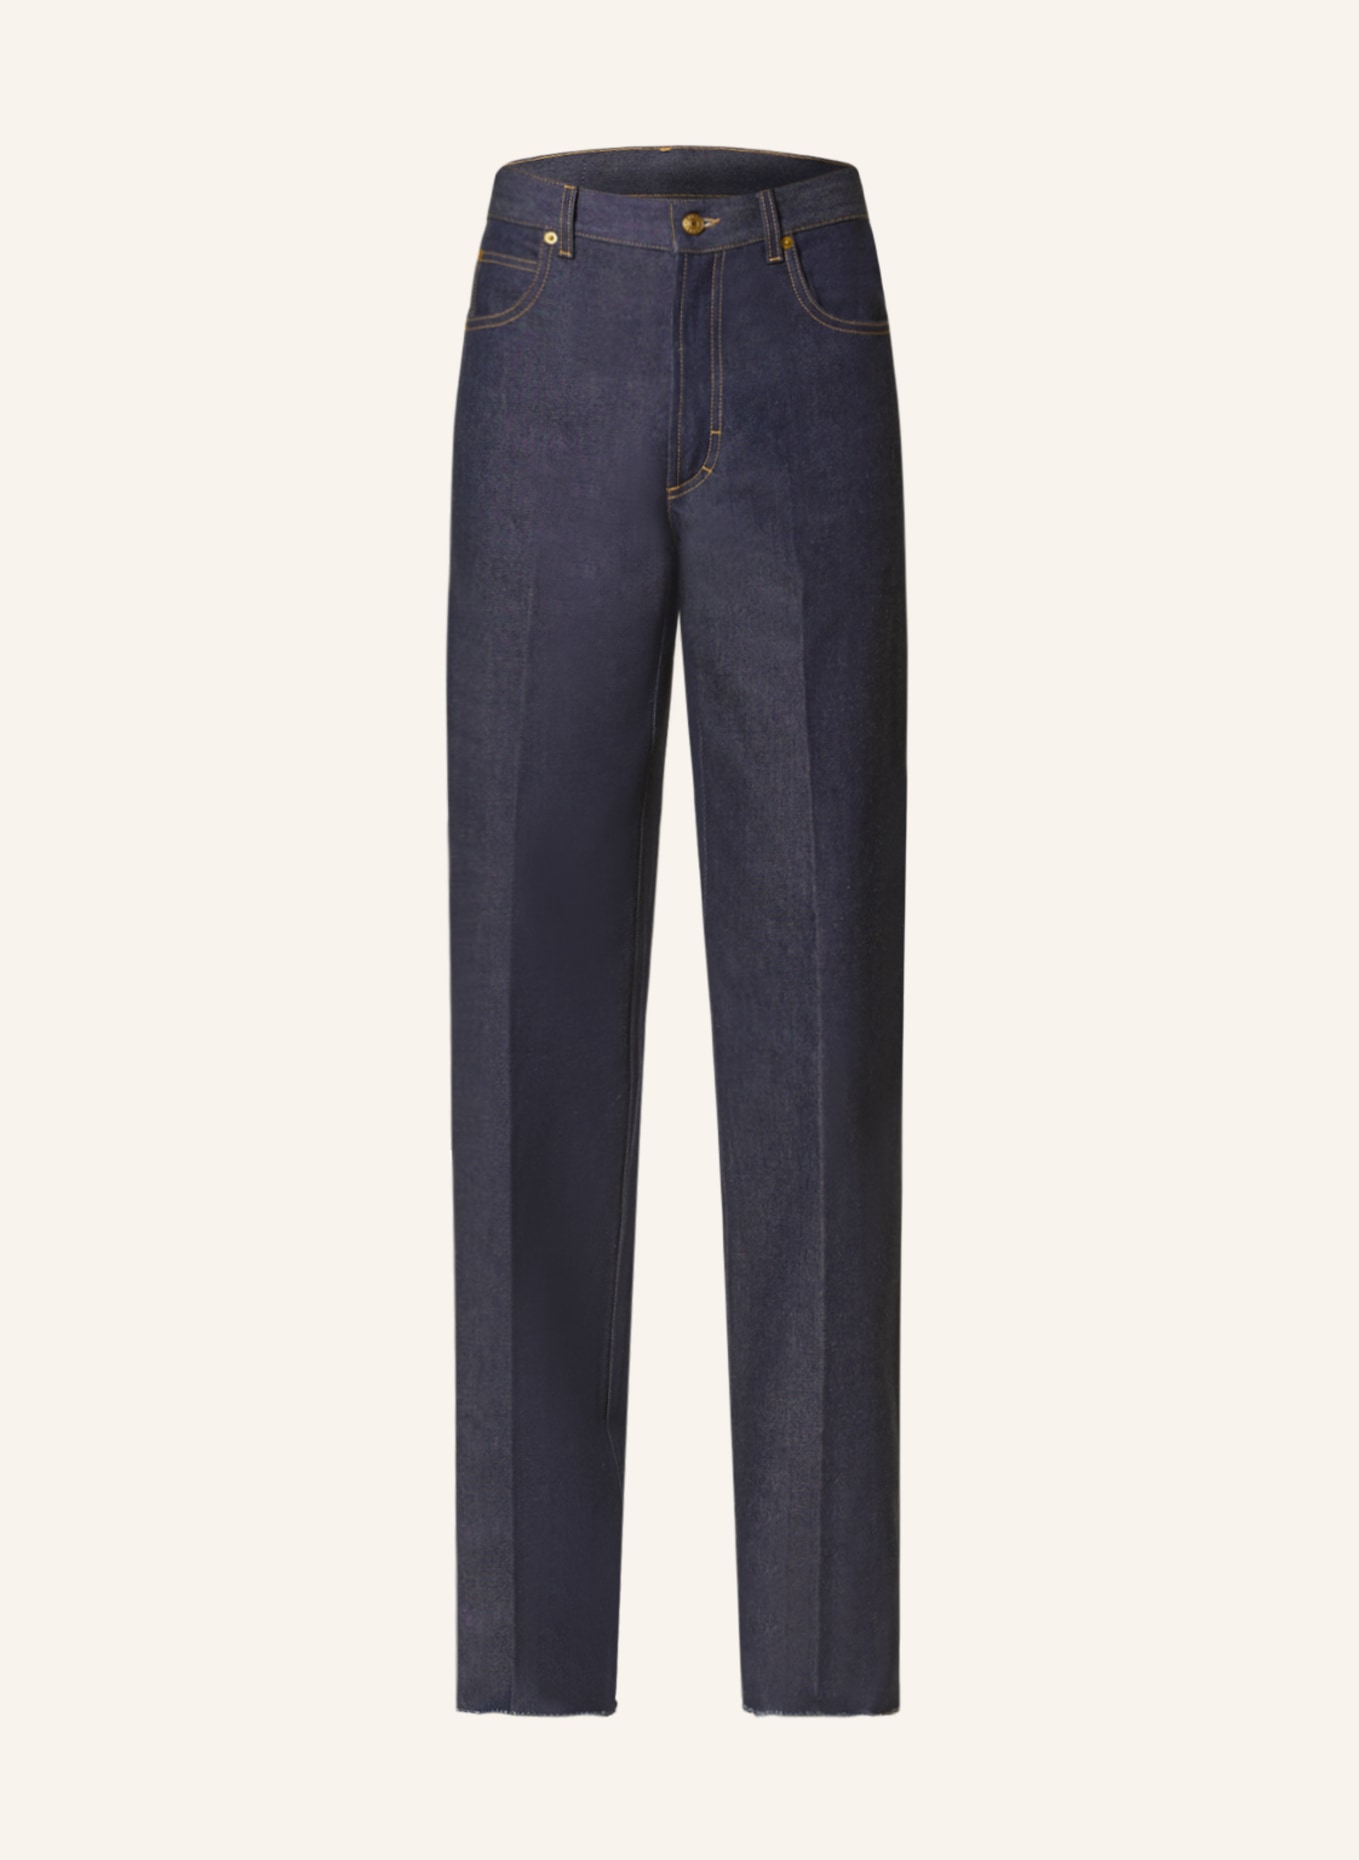 GUCCI Jeans regular fit, Color: 4100 DARK BLUE (Image 1)